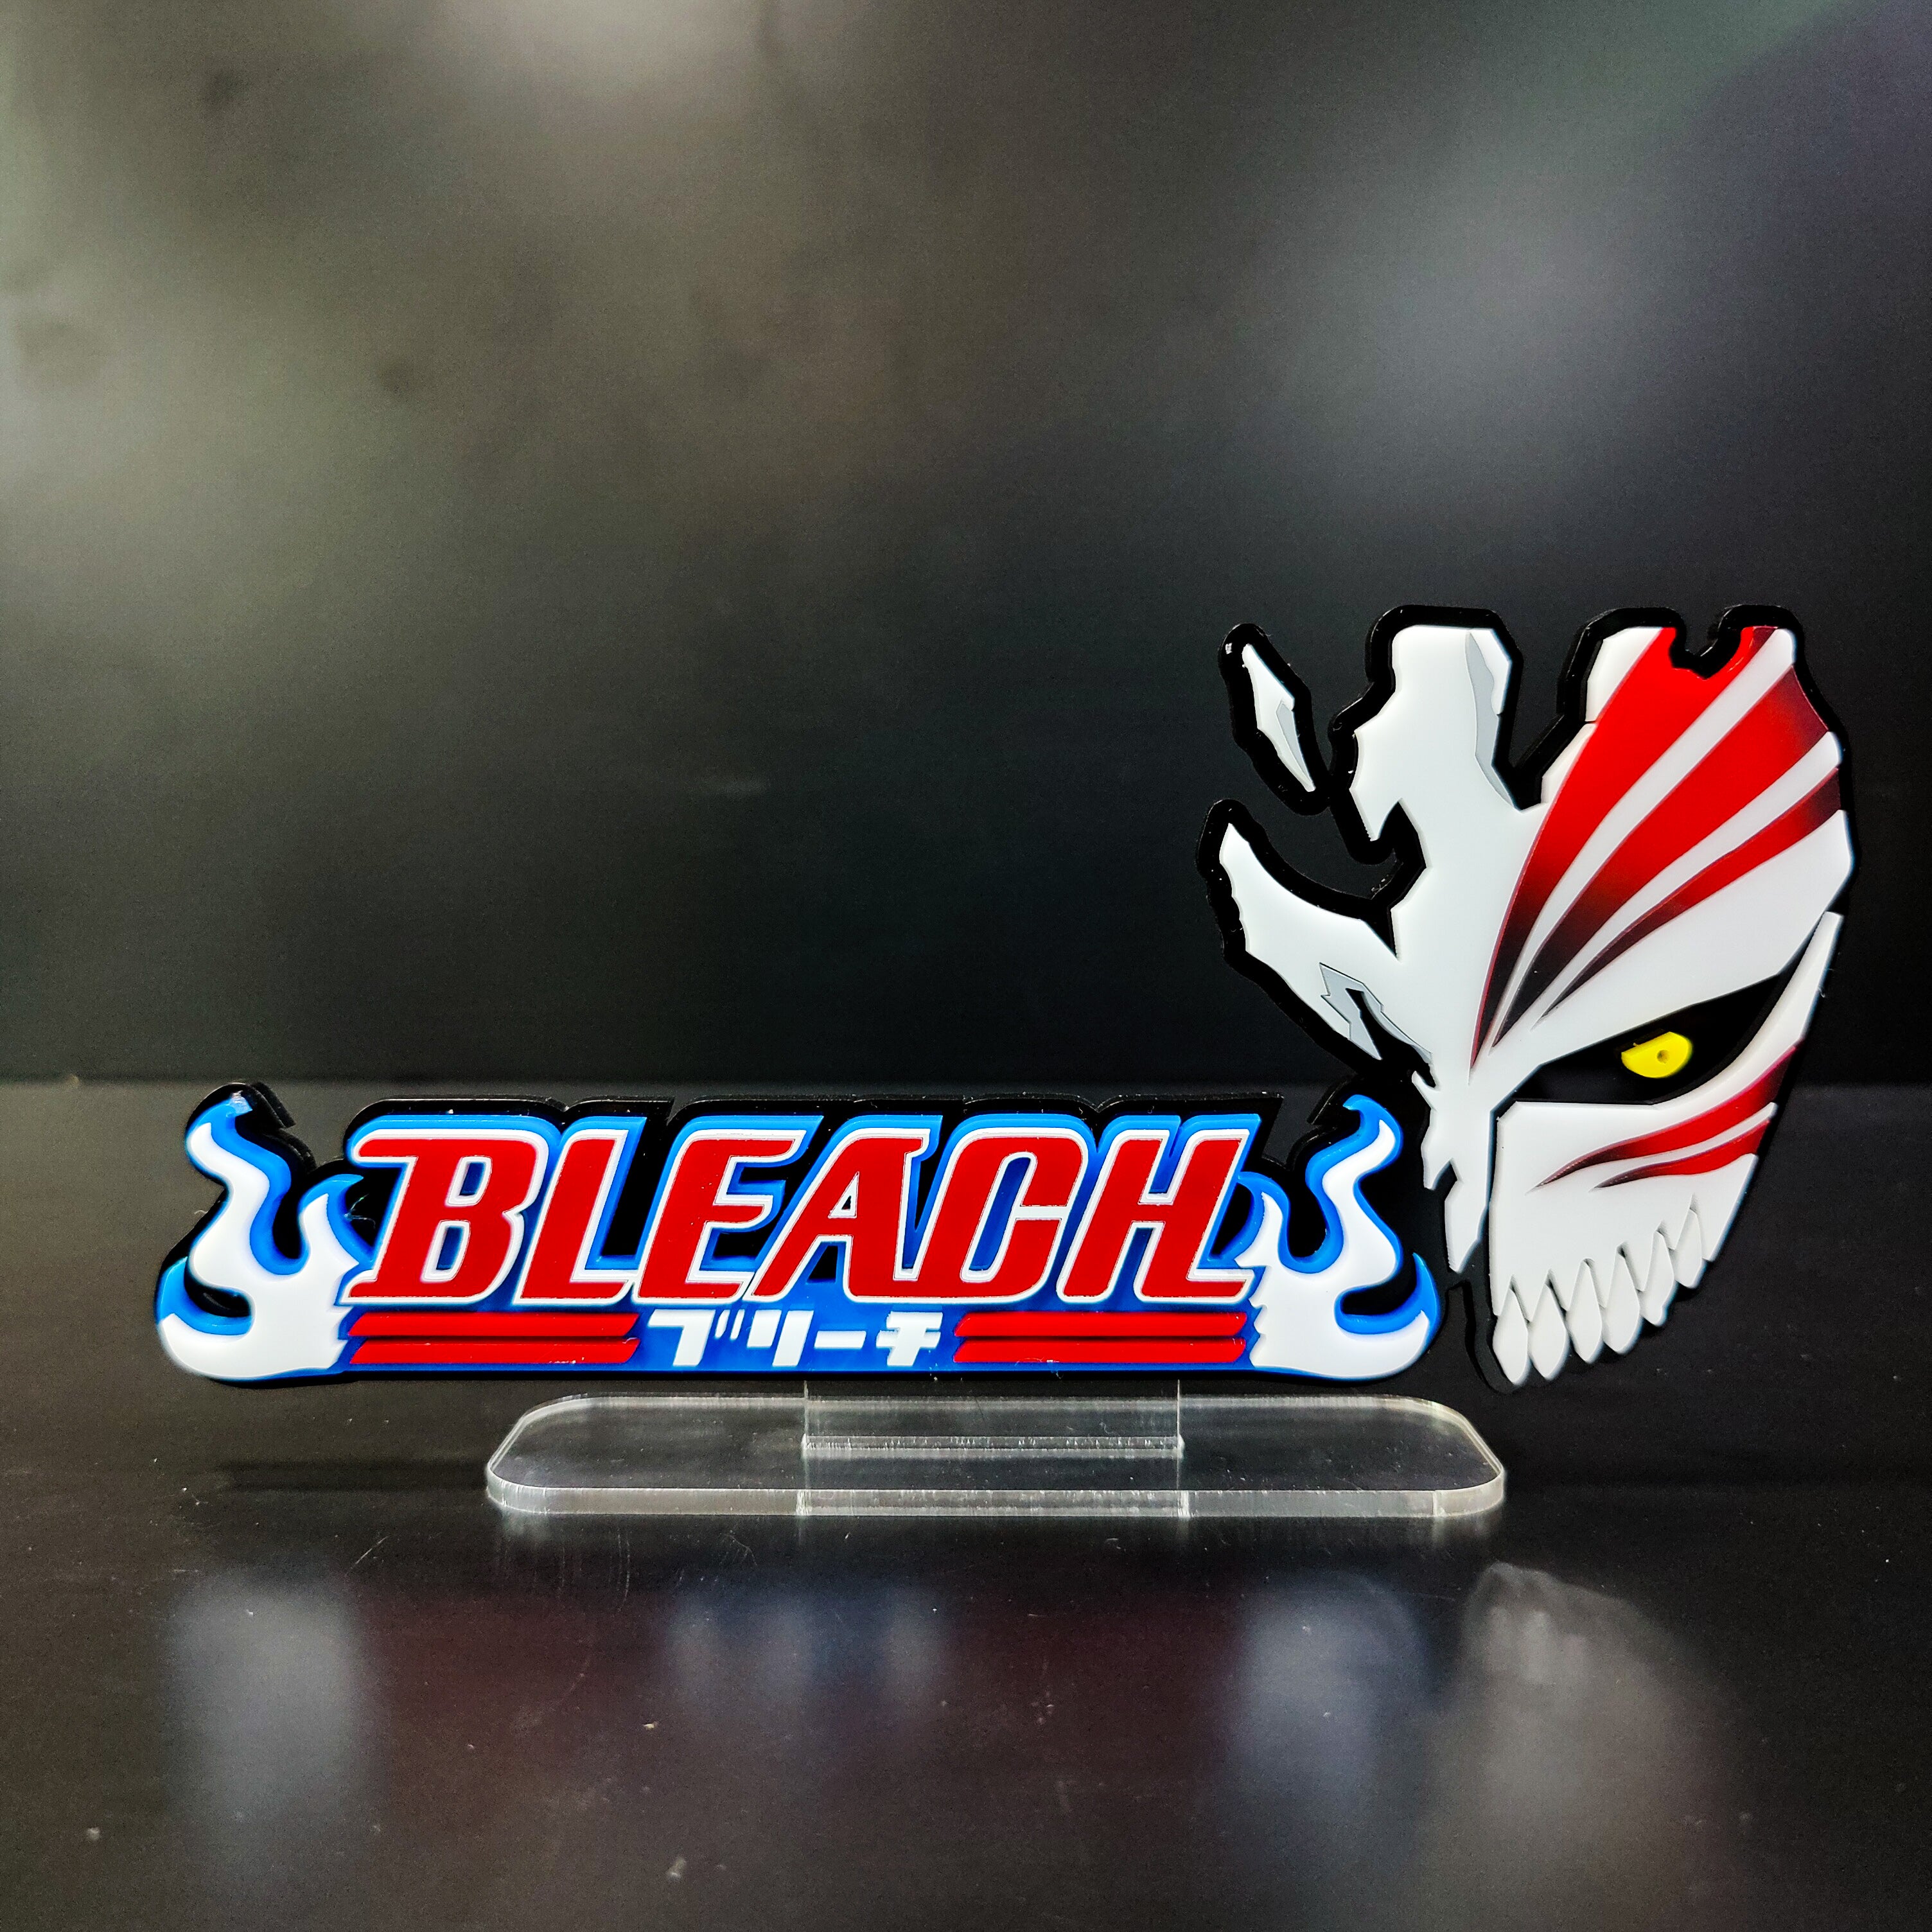 Bleach Anime Logo Transparent HD Png Download  Transparent Png Image   PNGitem